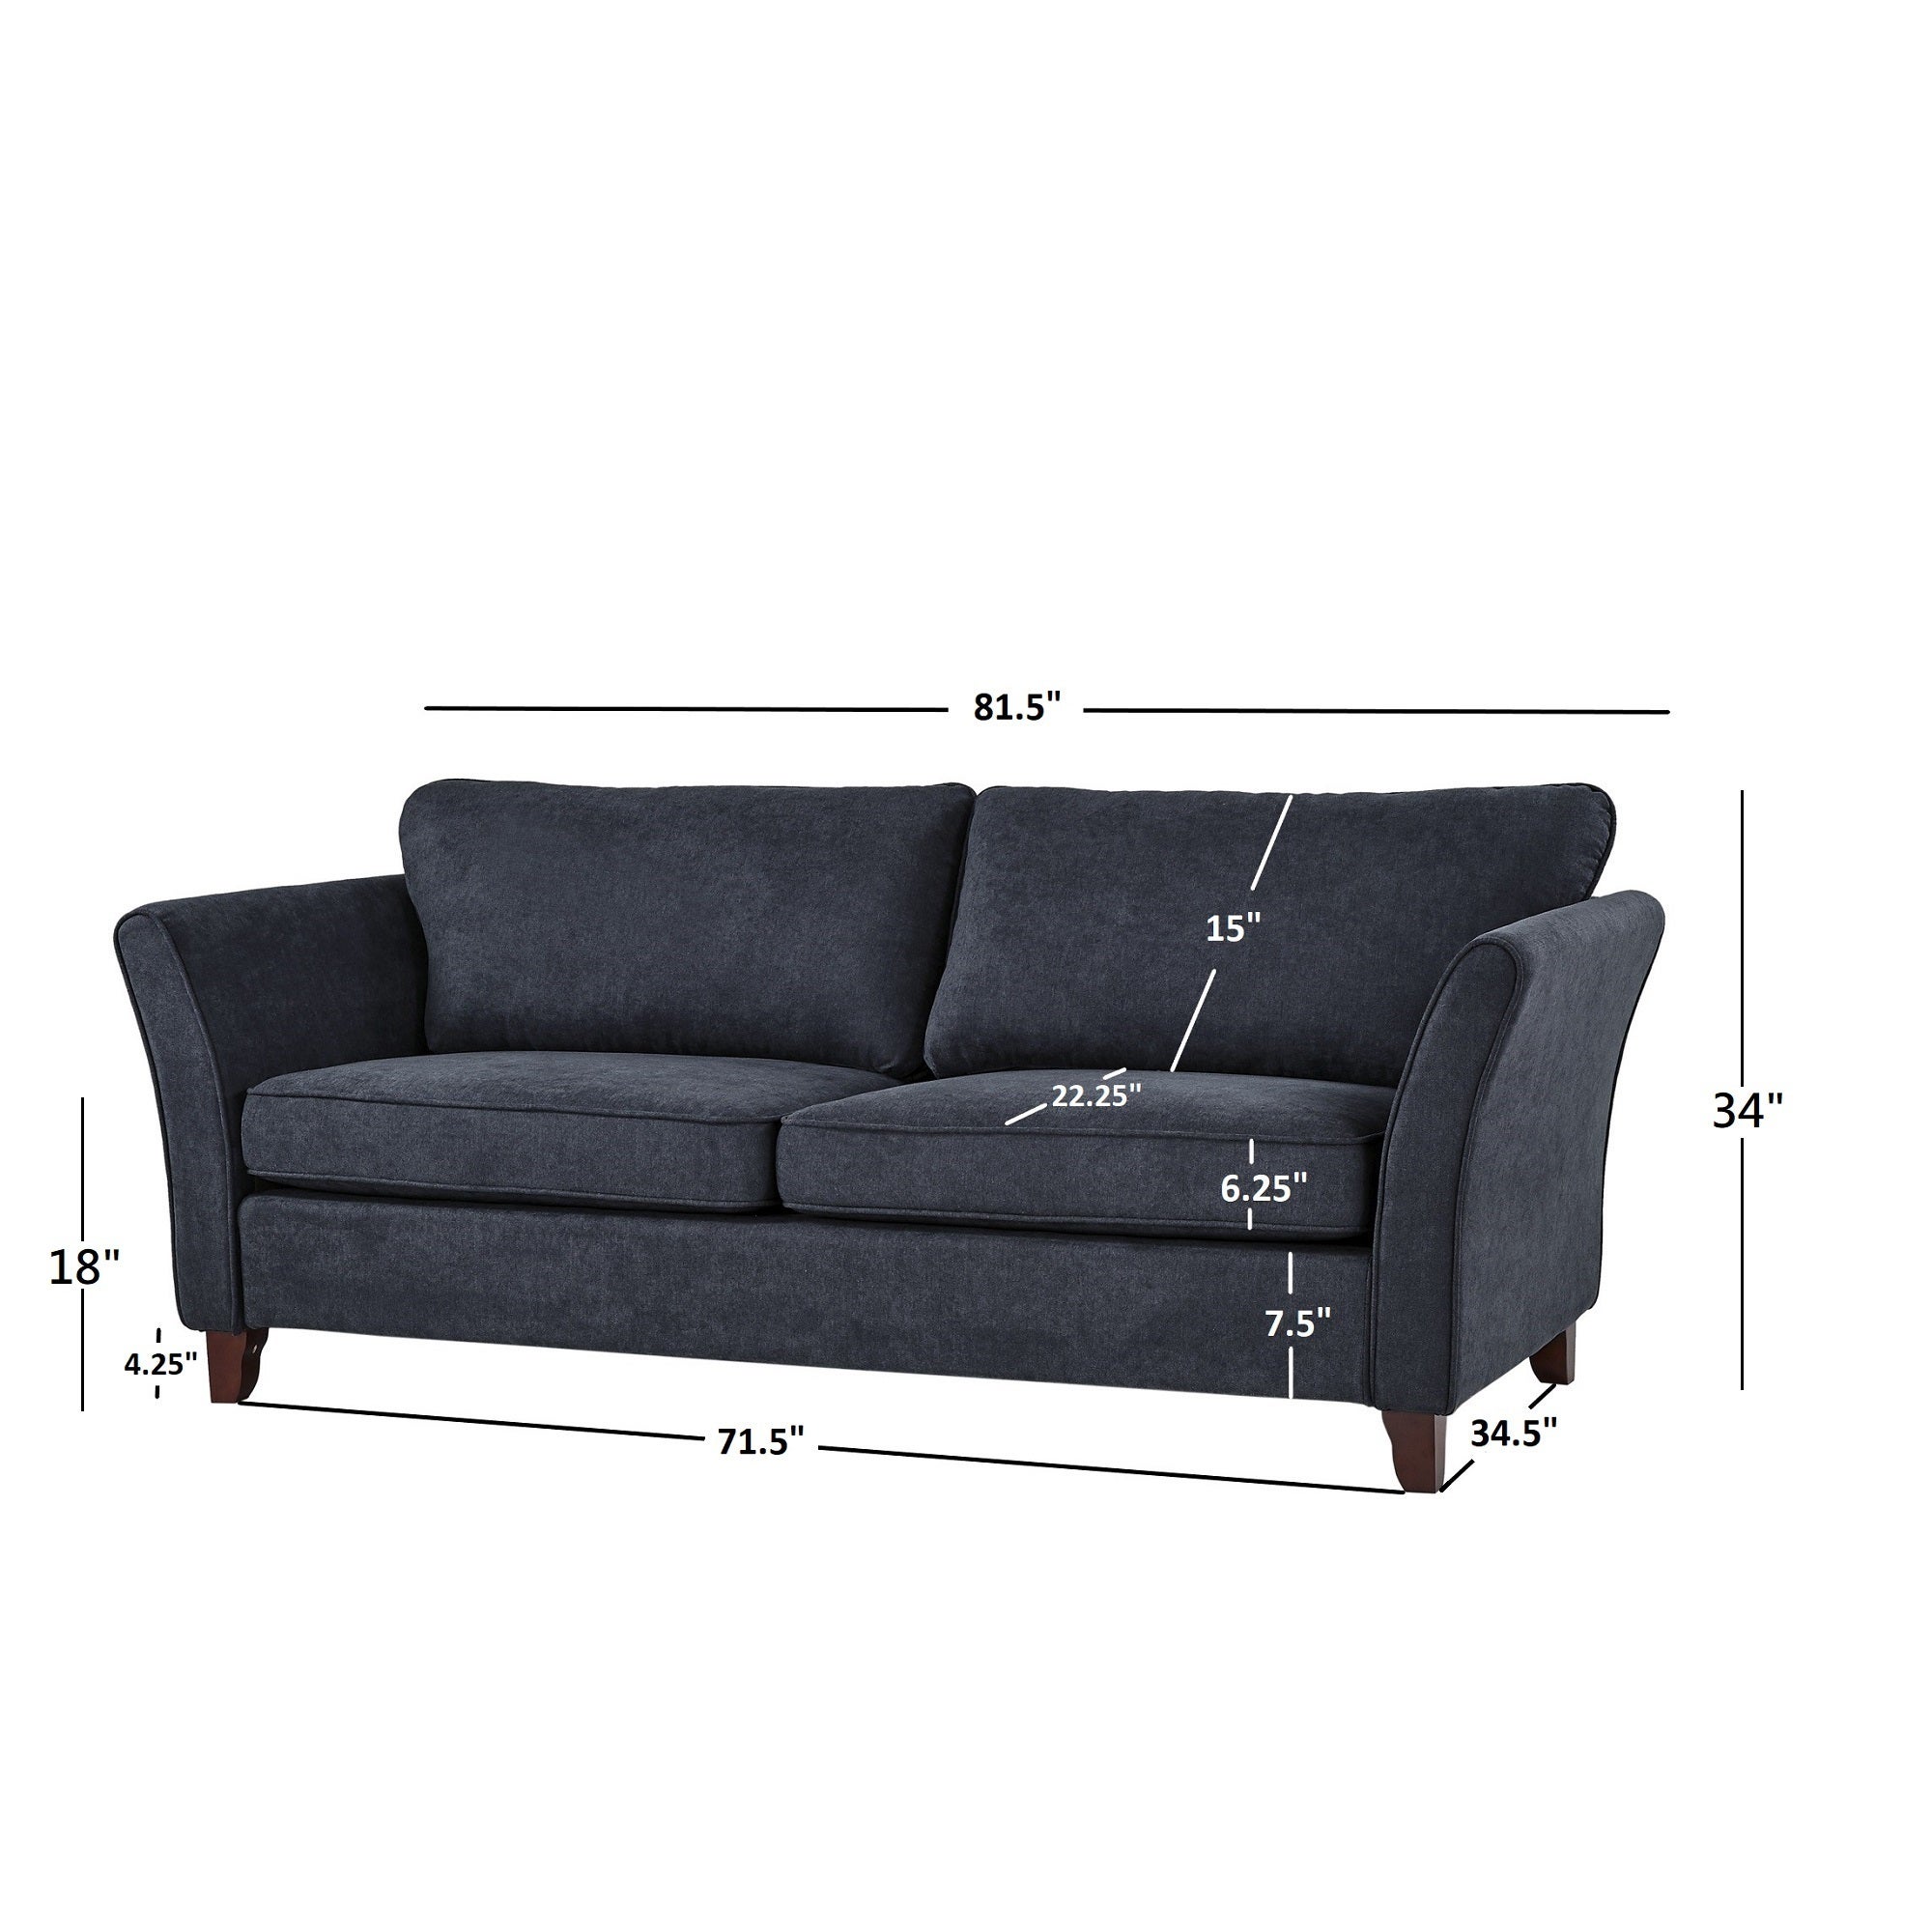 No Sofa L Kingbird Furniture Company 12